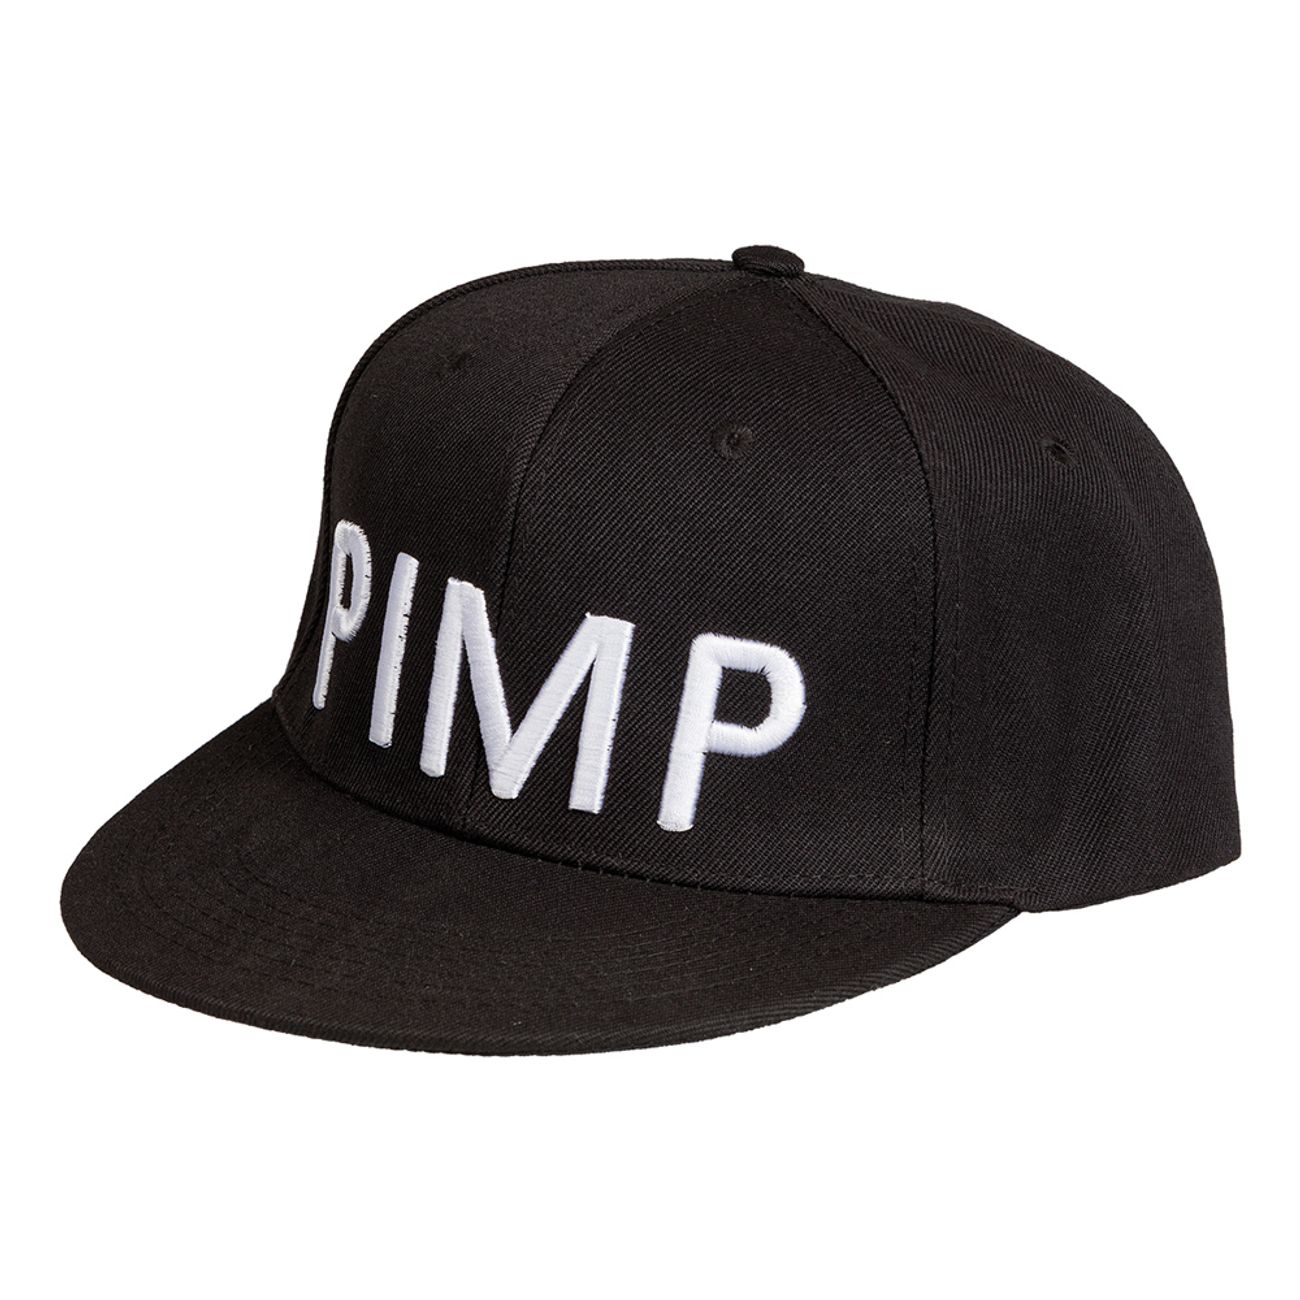 pimp-keps-1